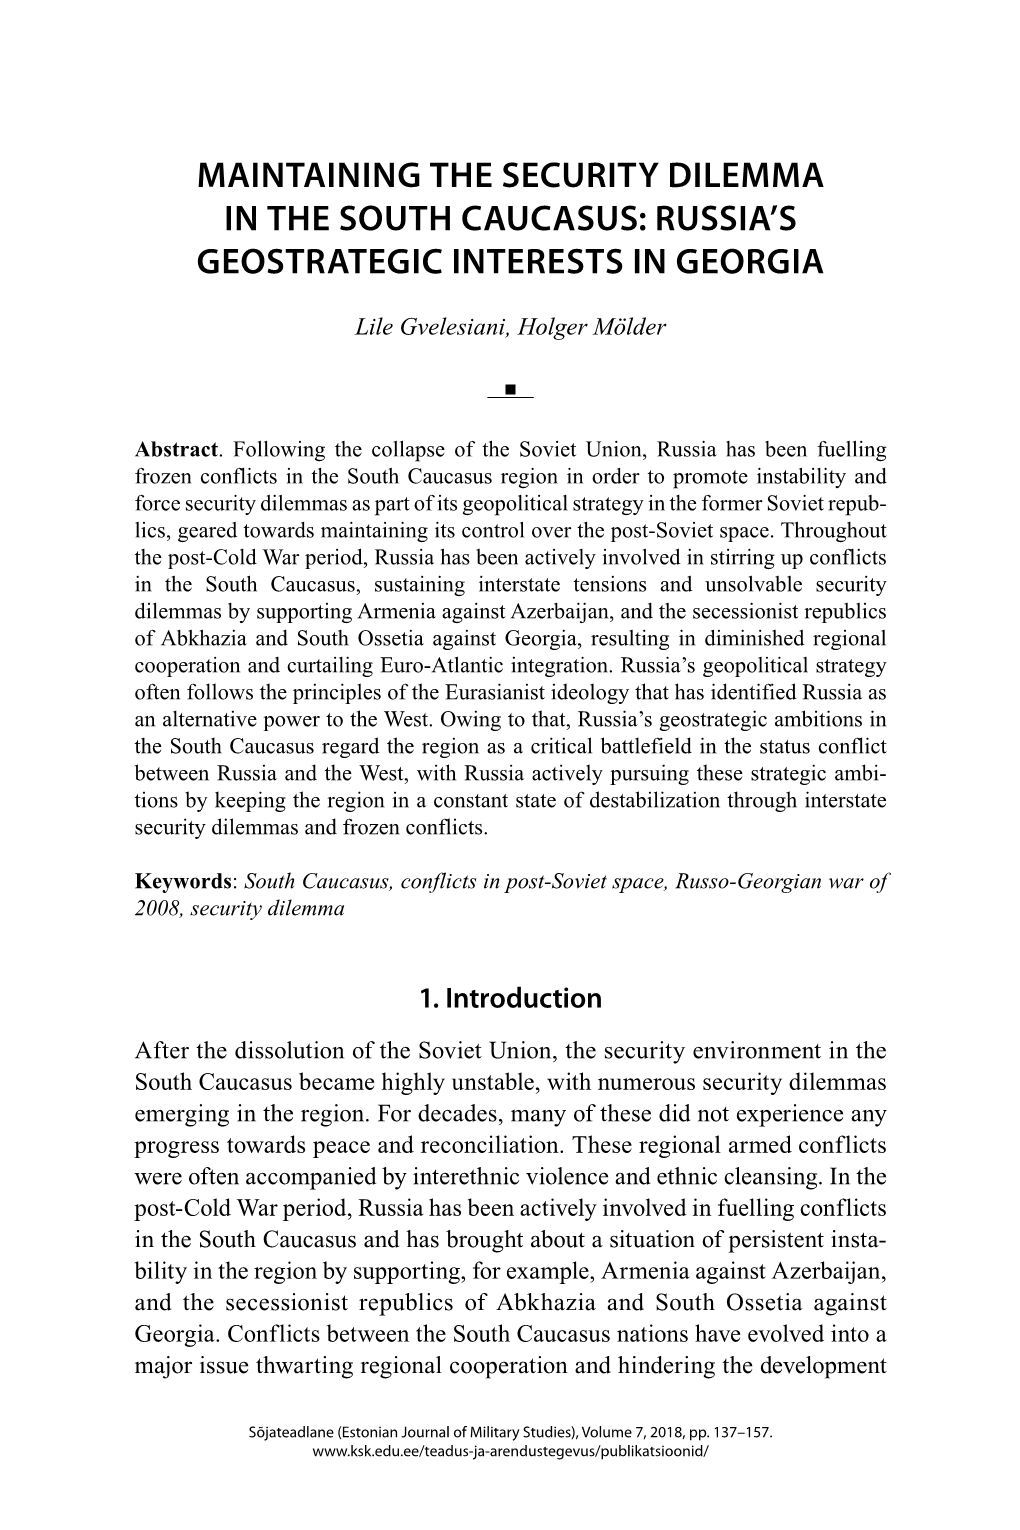 Russia's Geostrategic Interests in Georgia